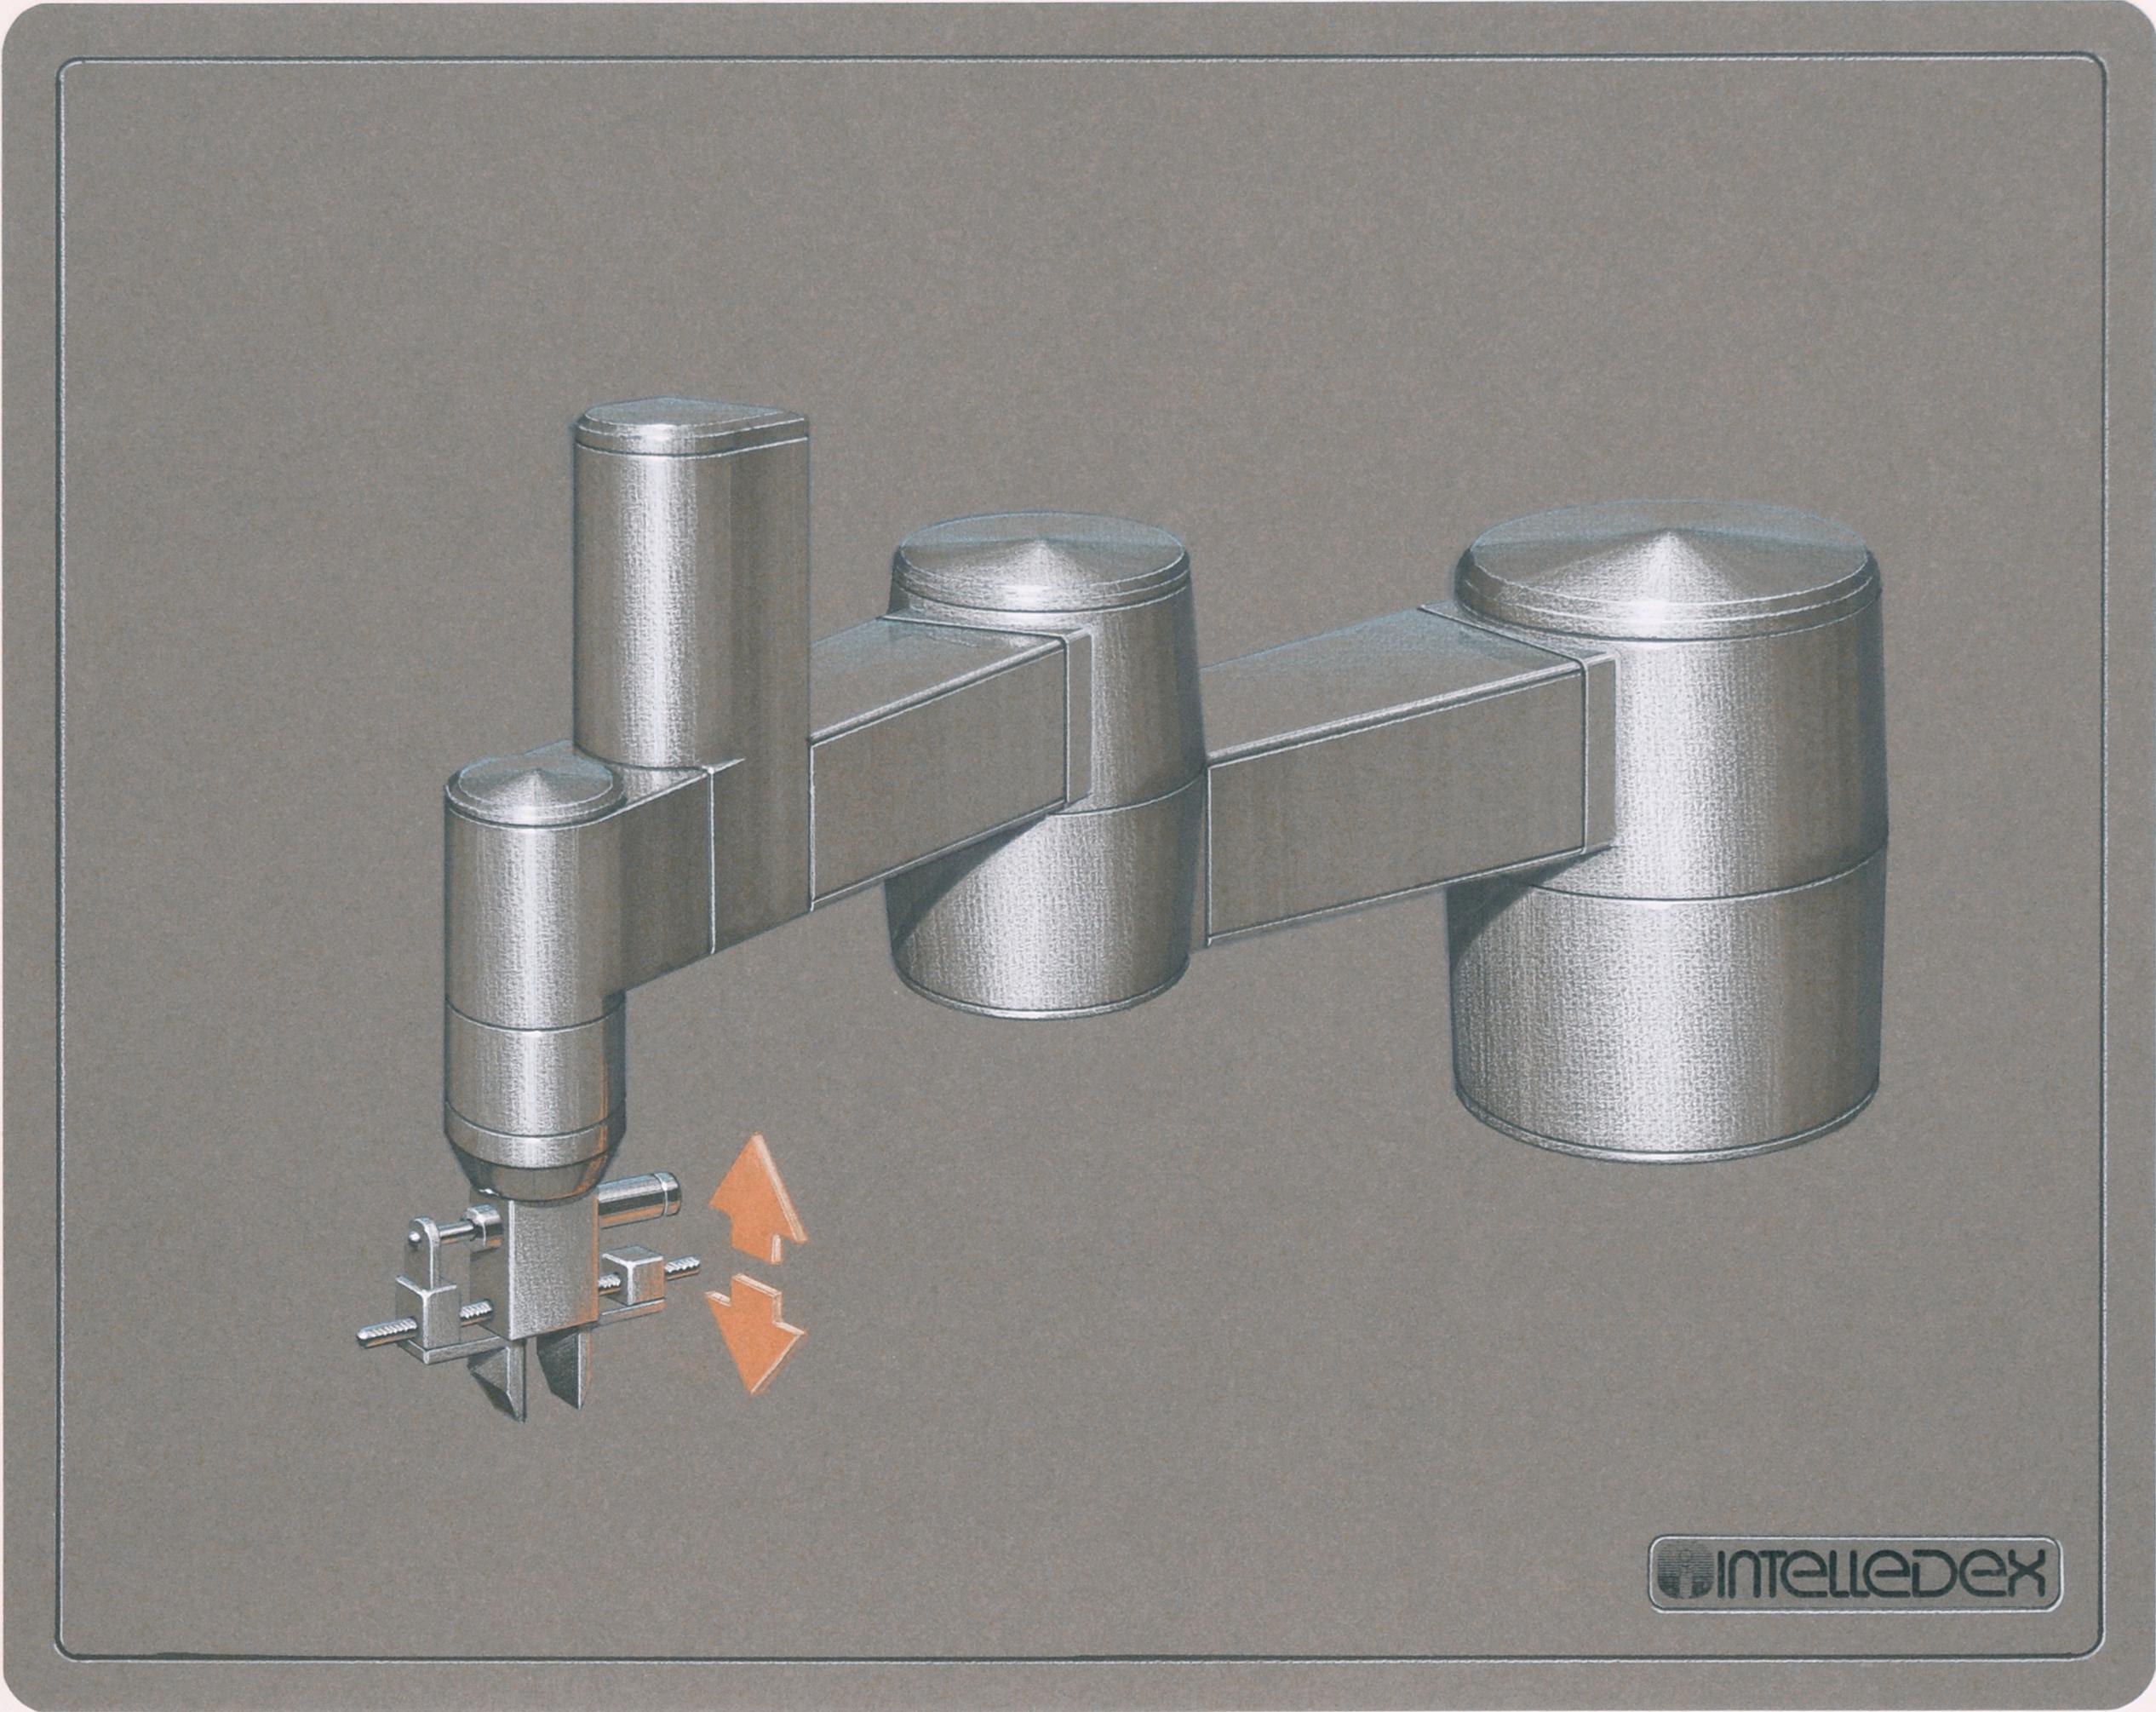 Dessin de conception de machines industrielles par Intelledex au crayon et encre sur papier - Art de Edward T. Liljenwall